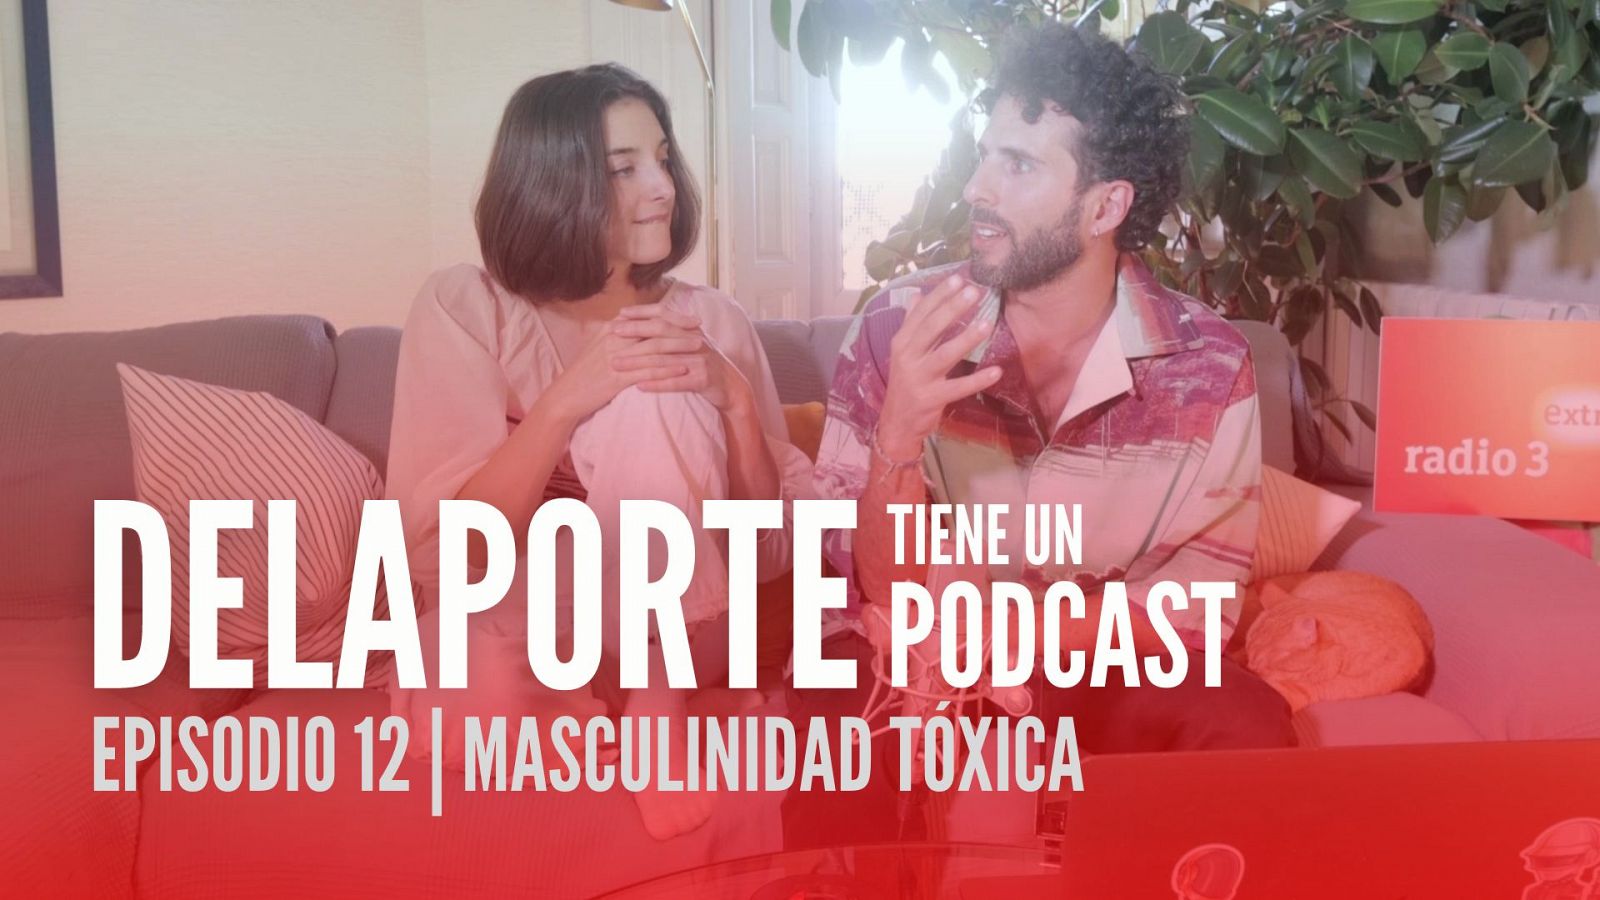 Delaporte tiene un podcast - Masculinidad tóxica - 01/12/2022- Ver ahora